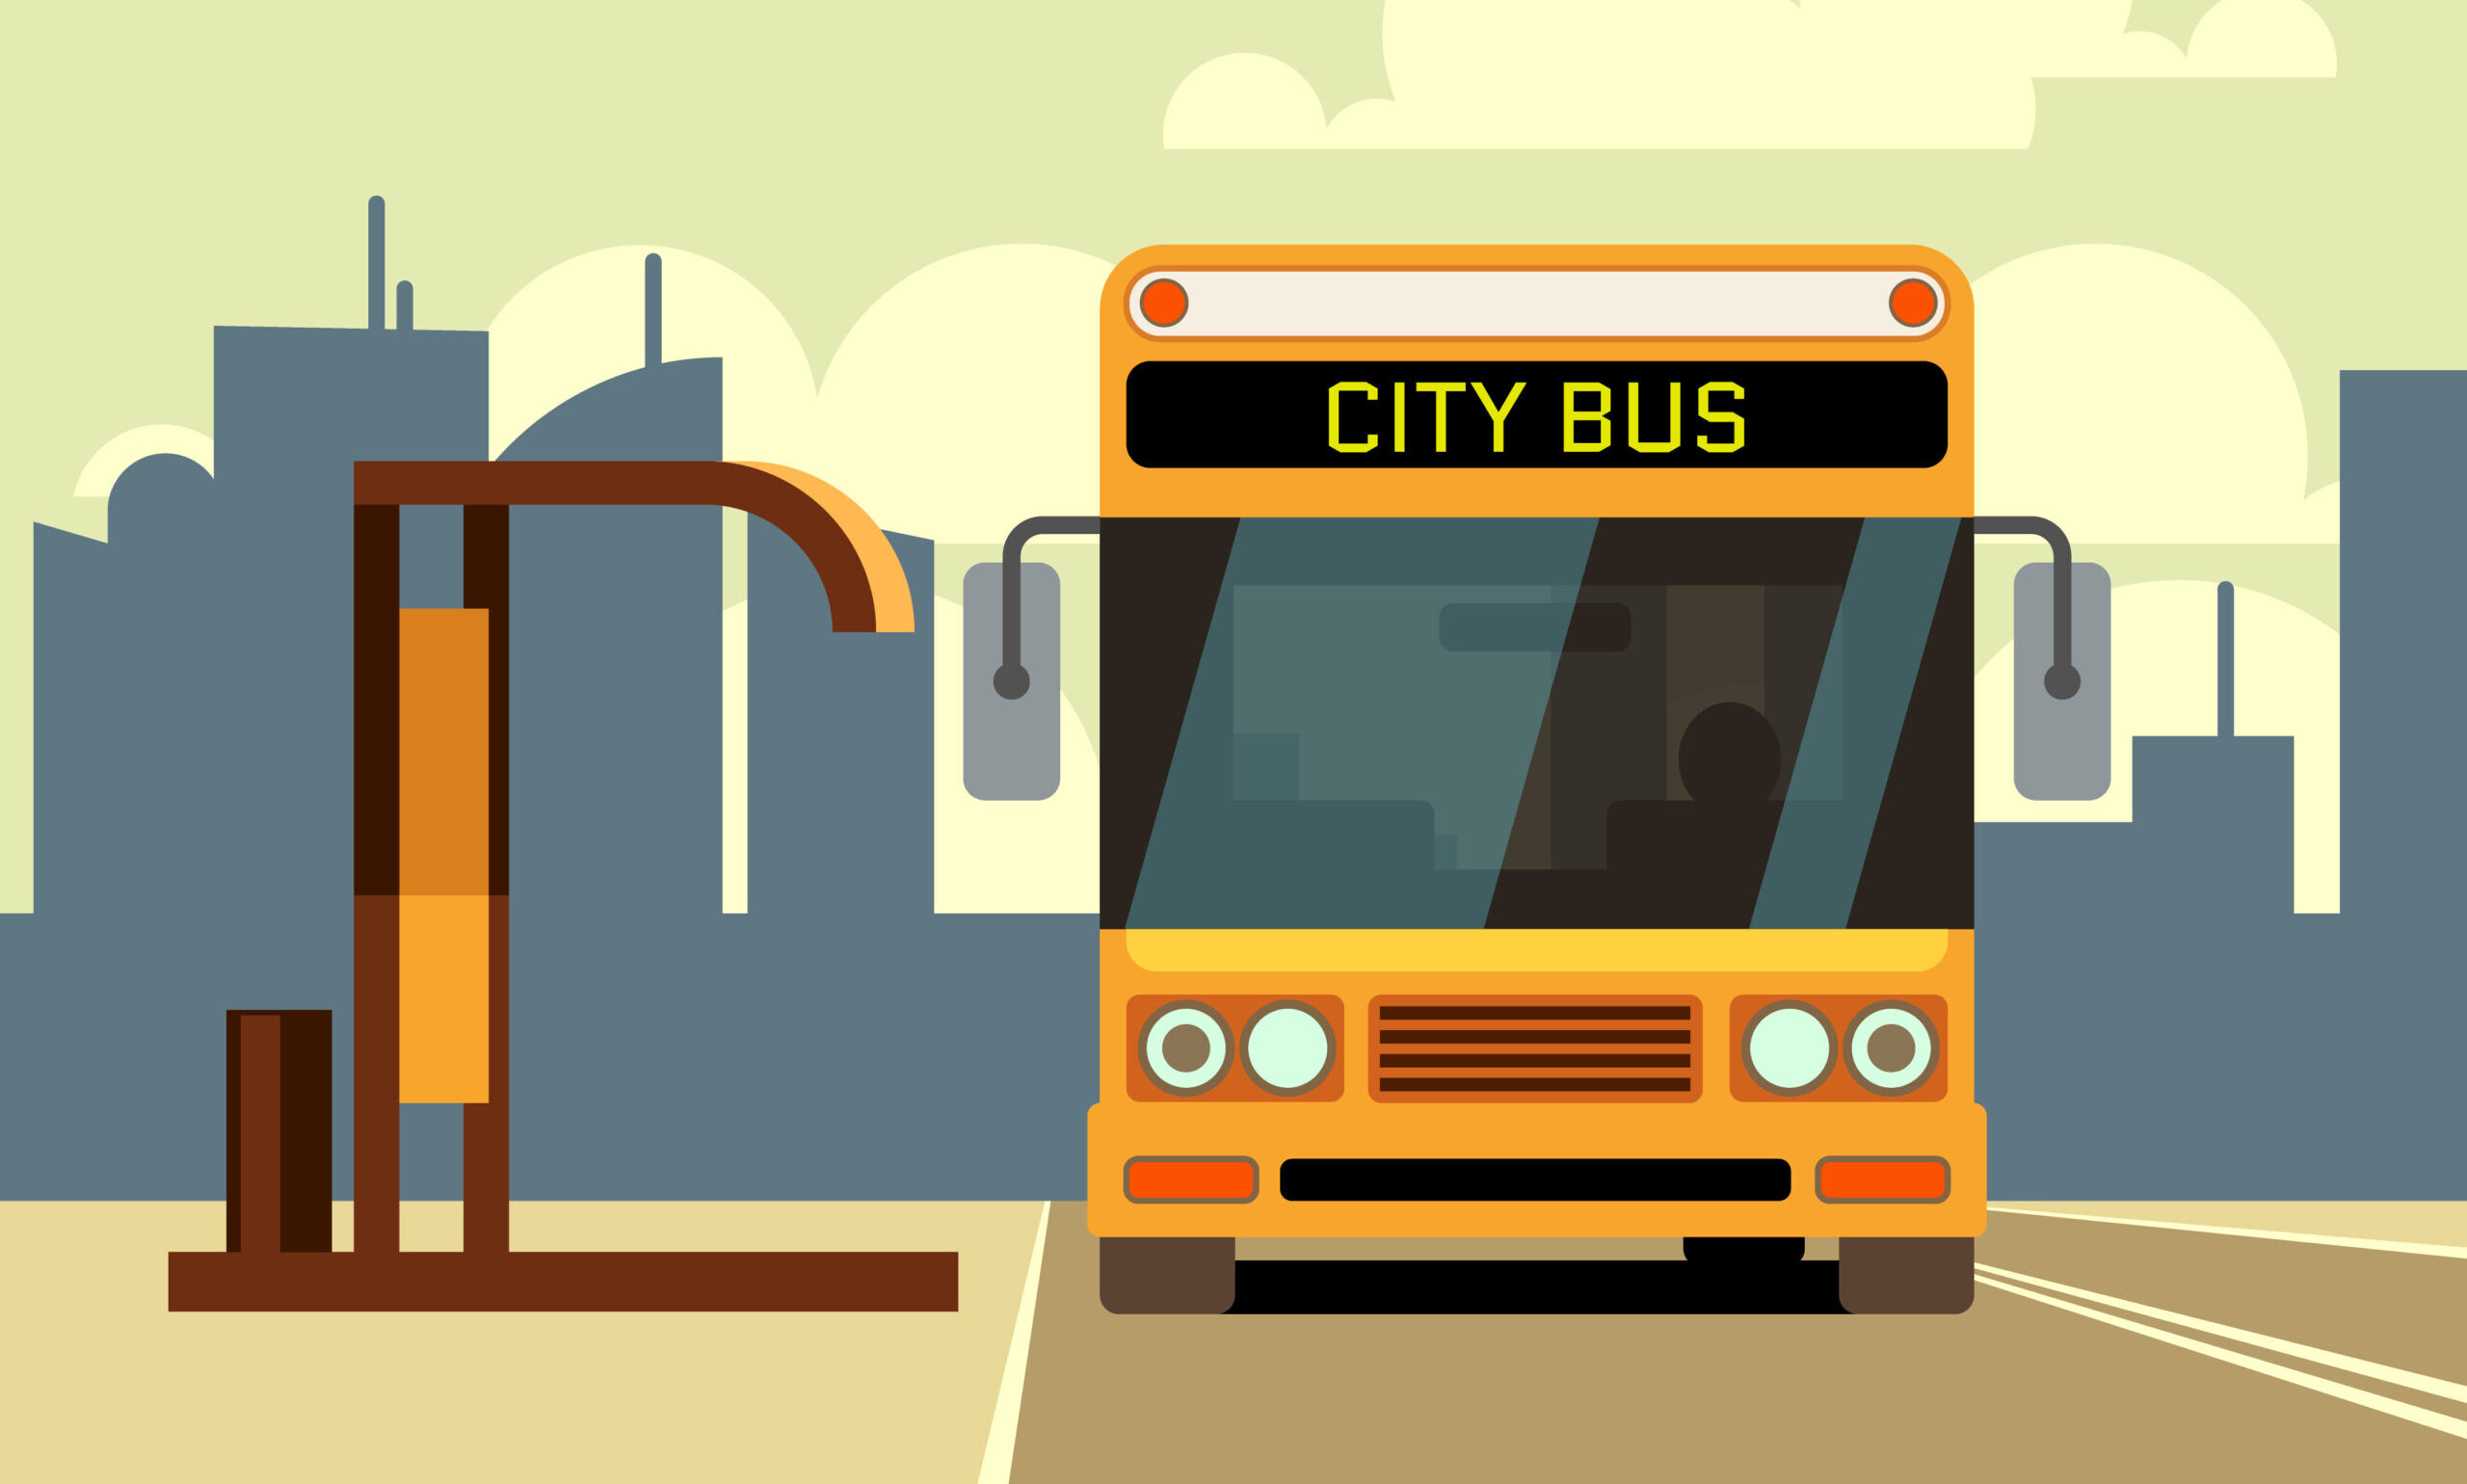 シティバスと書かれたバスがバス停で停車している様子が描かれているイラスト。